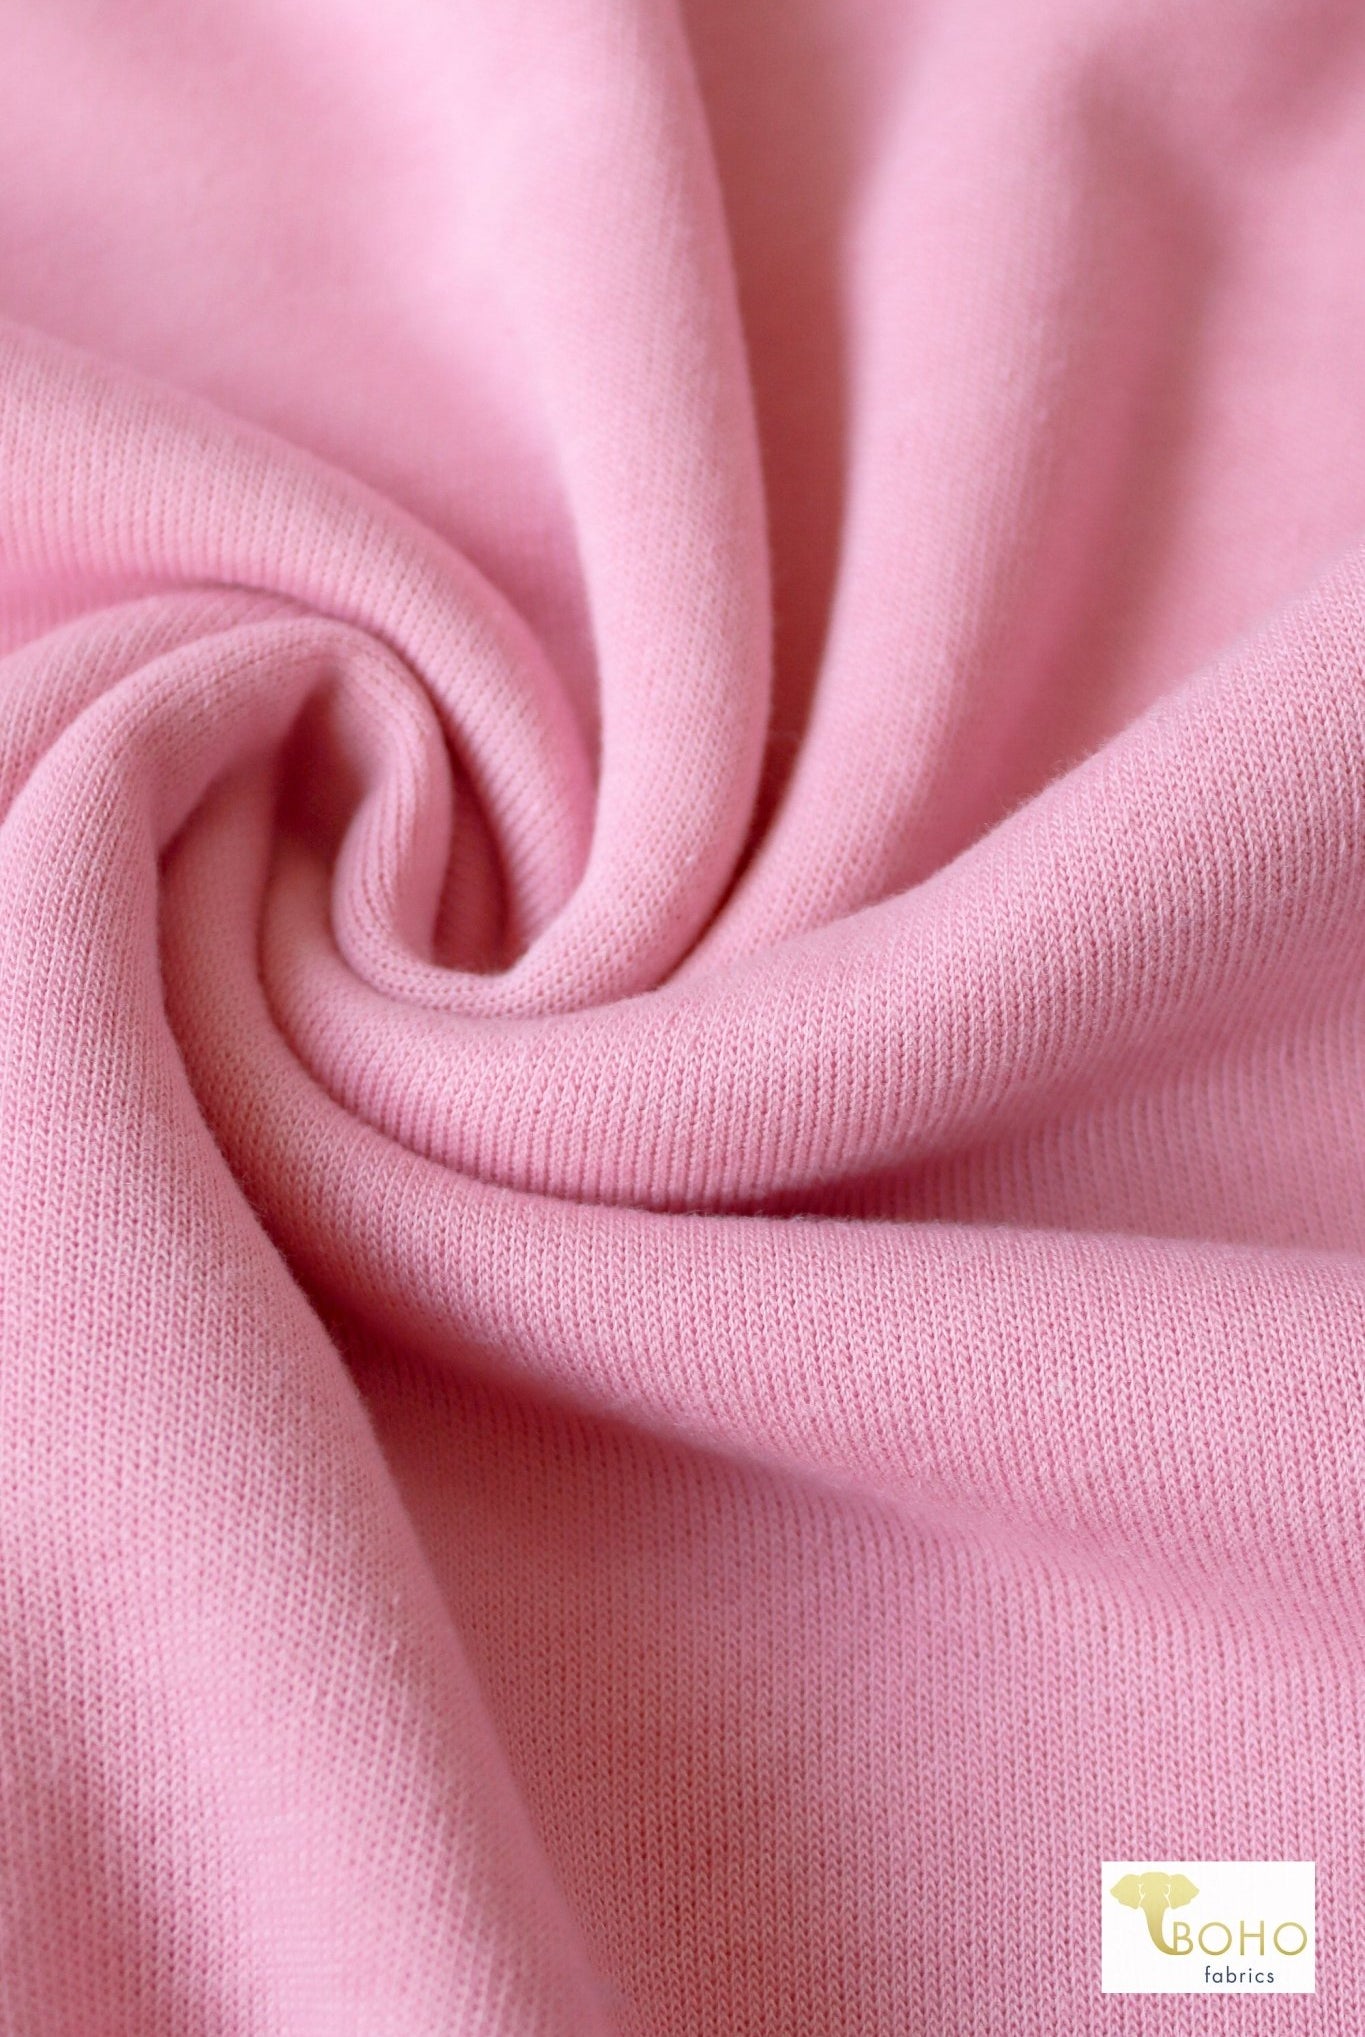 Blossom Light Pink, Sweatshirt Fleece. - Boho Fabrics